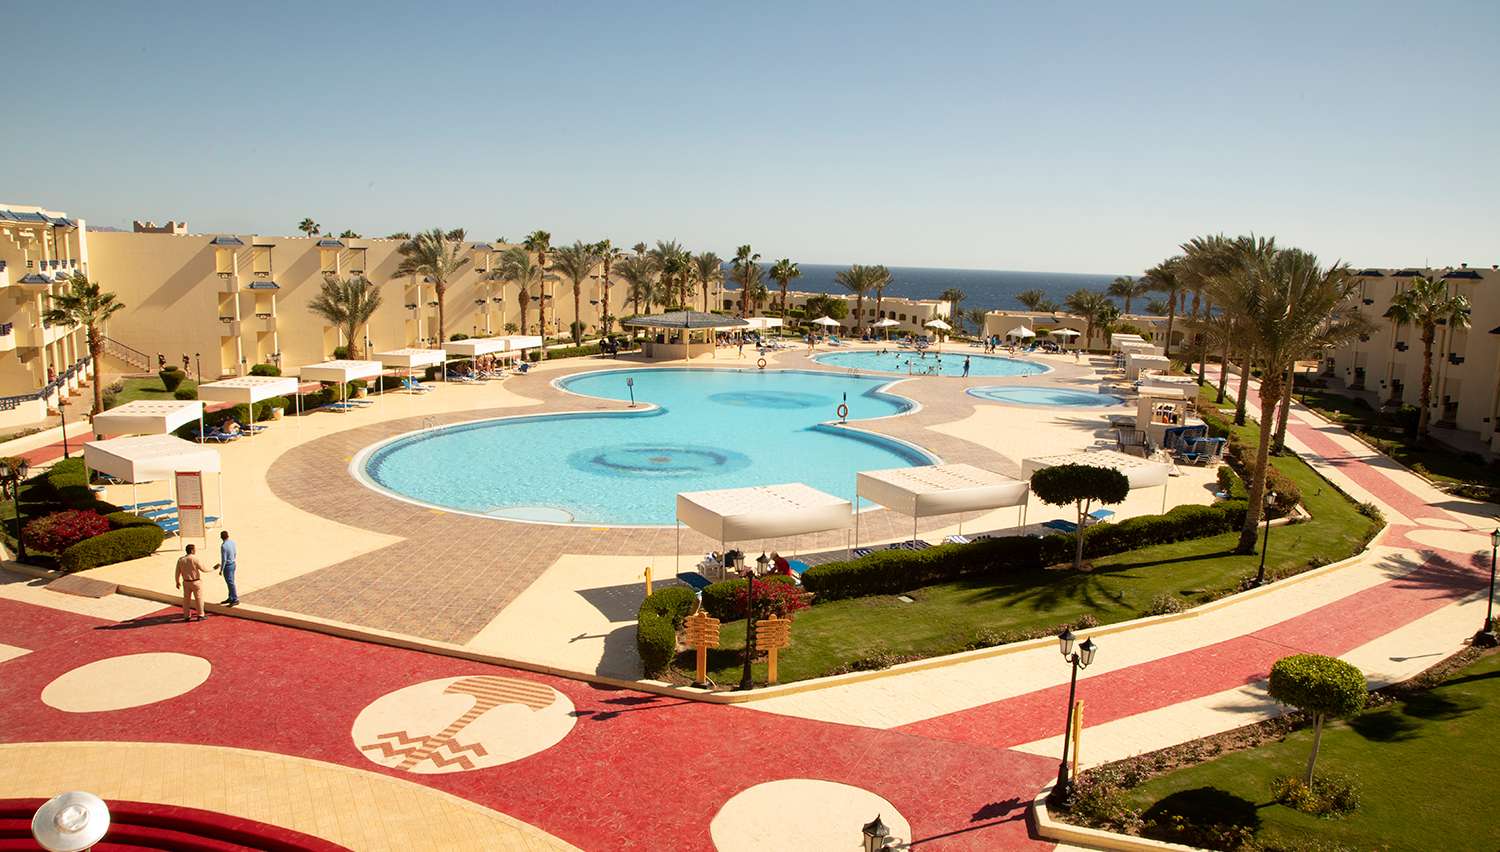 ارخص سعر لحجز منتجع جراند اويزيس ريزورت شرم الشيخ - بالانتقالات 2022 | Grand Oasis Resort